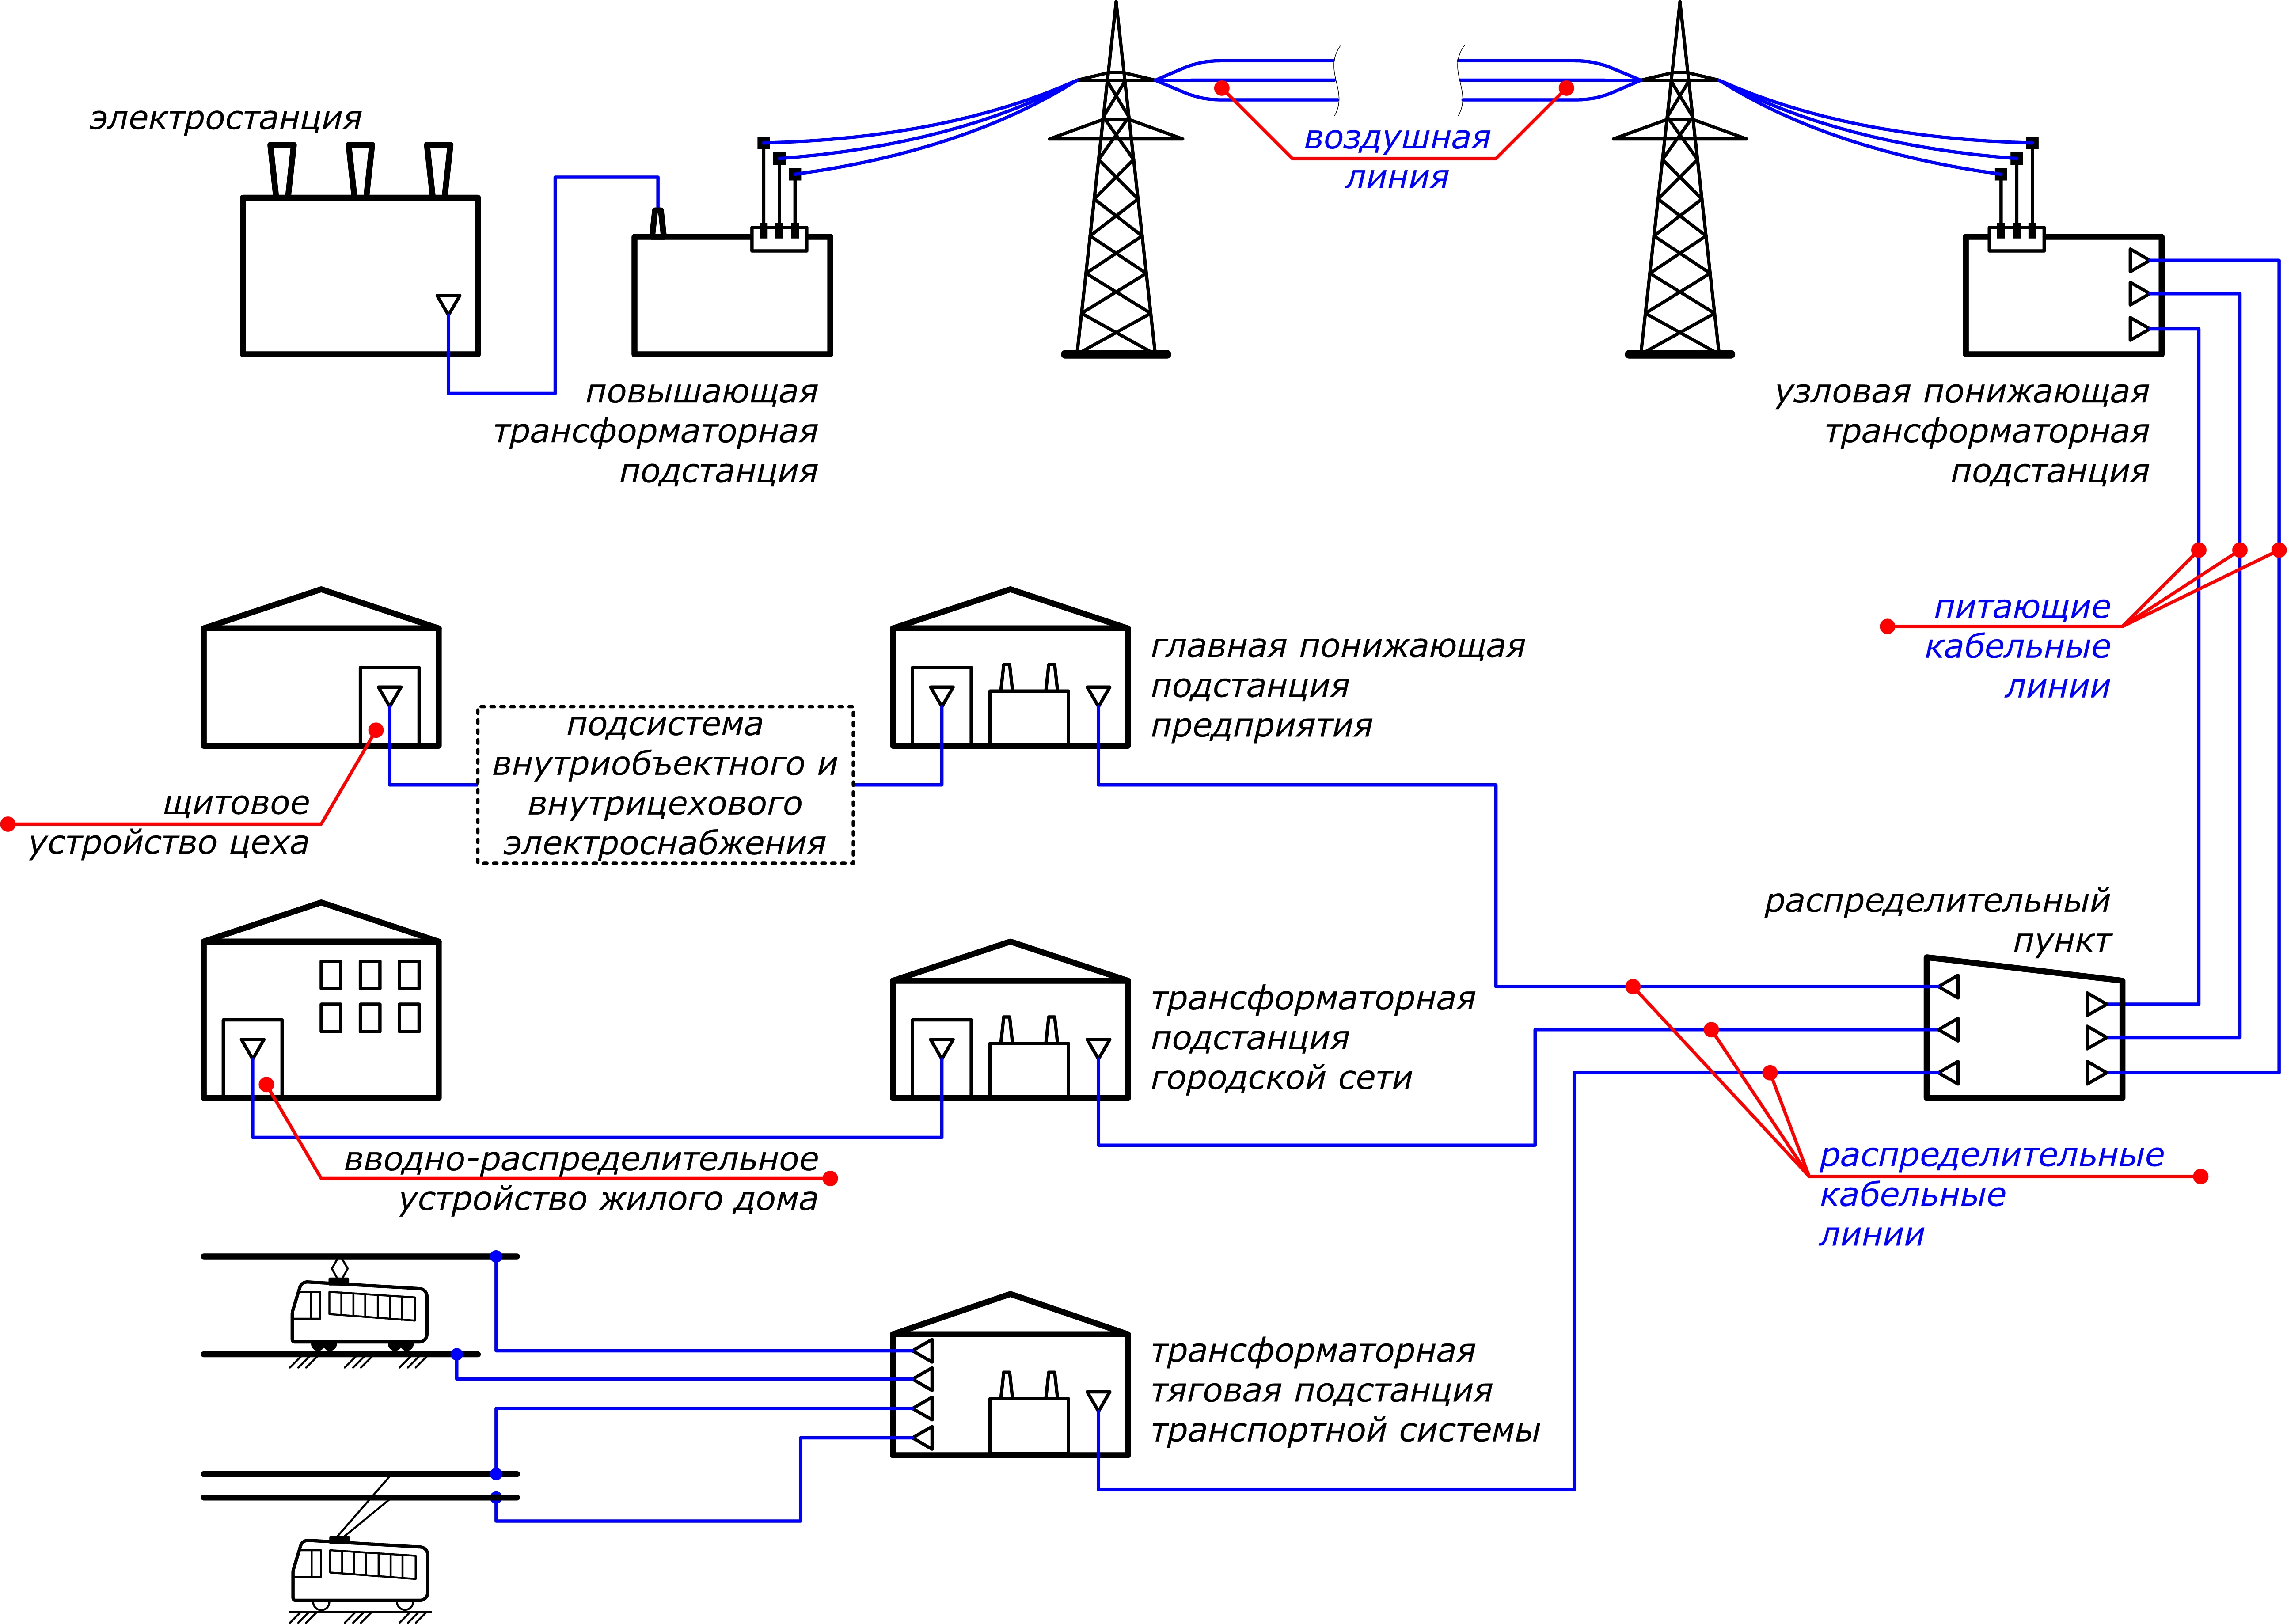 Работы эл энергии. Схема подключения электроснабжения. Принципиальная схема распределения электроэнергии внутри объекта. Схема подключения потребителя к электрическим сетям. Схема распределения электроэнергии от электростанции к потребителю.